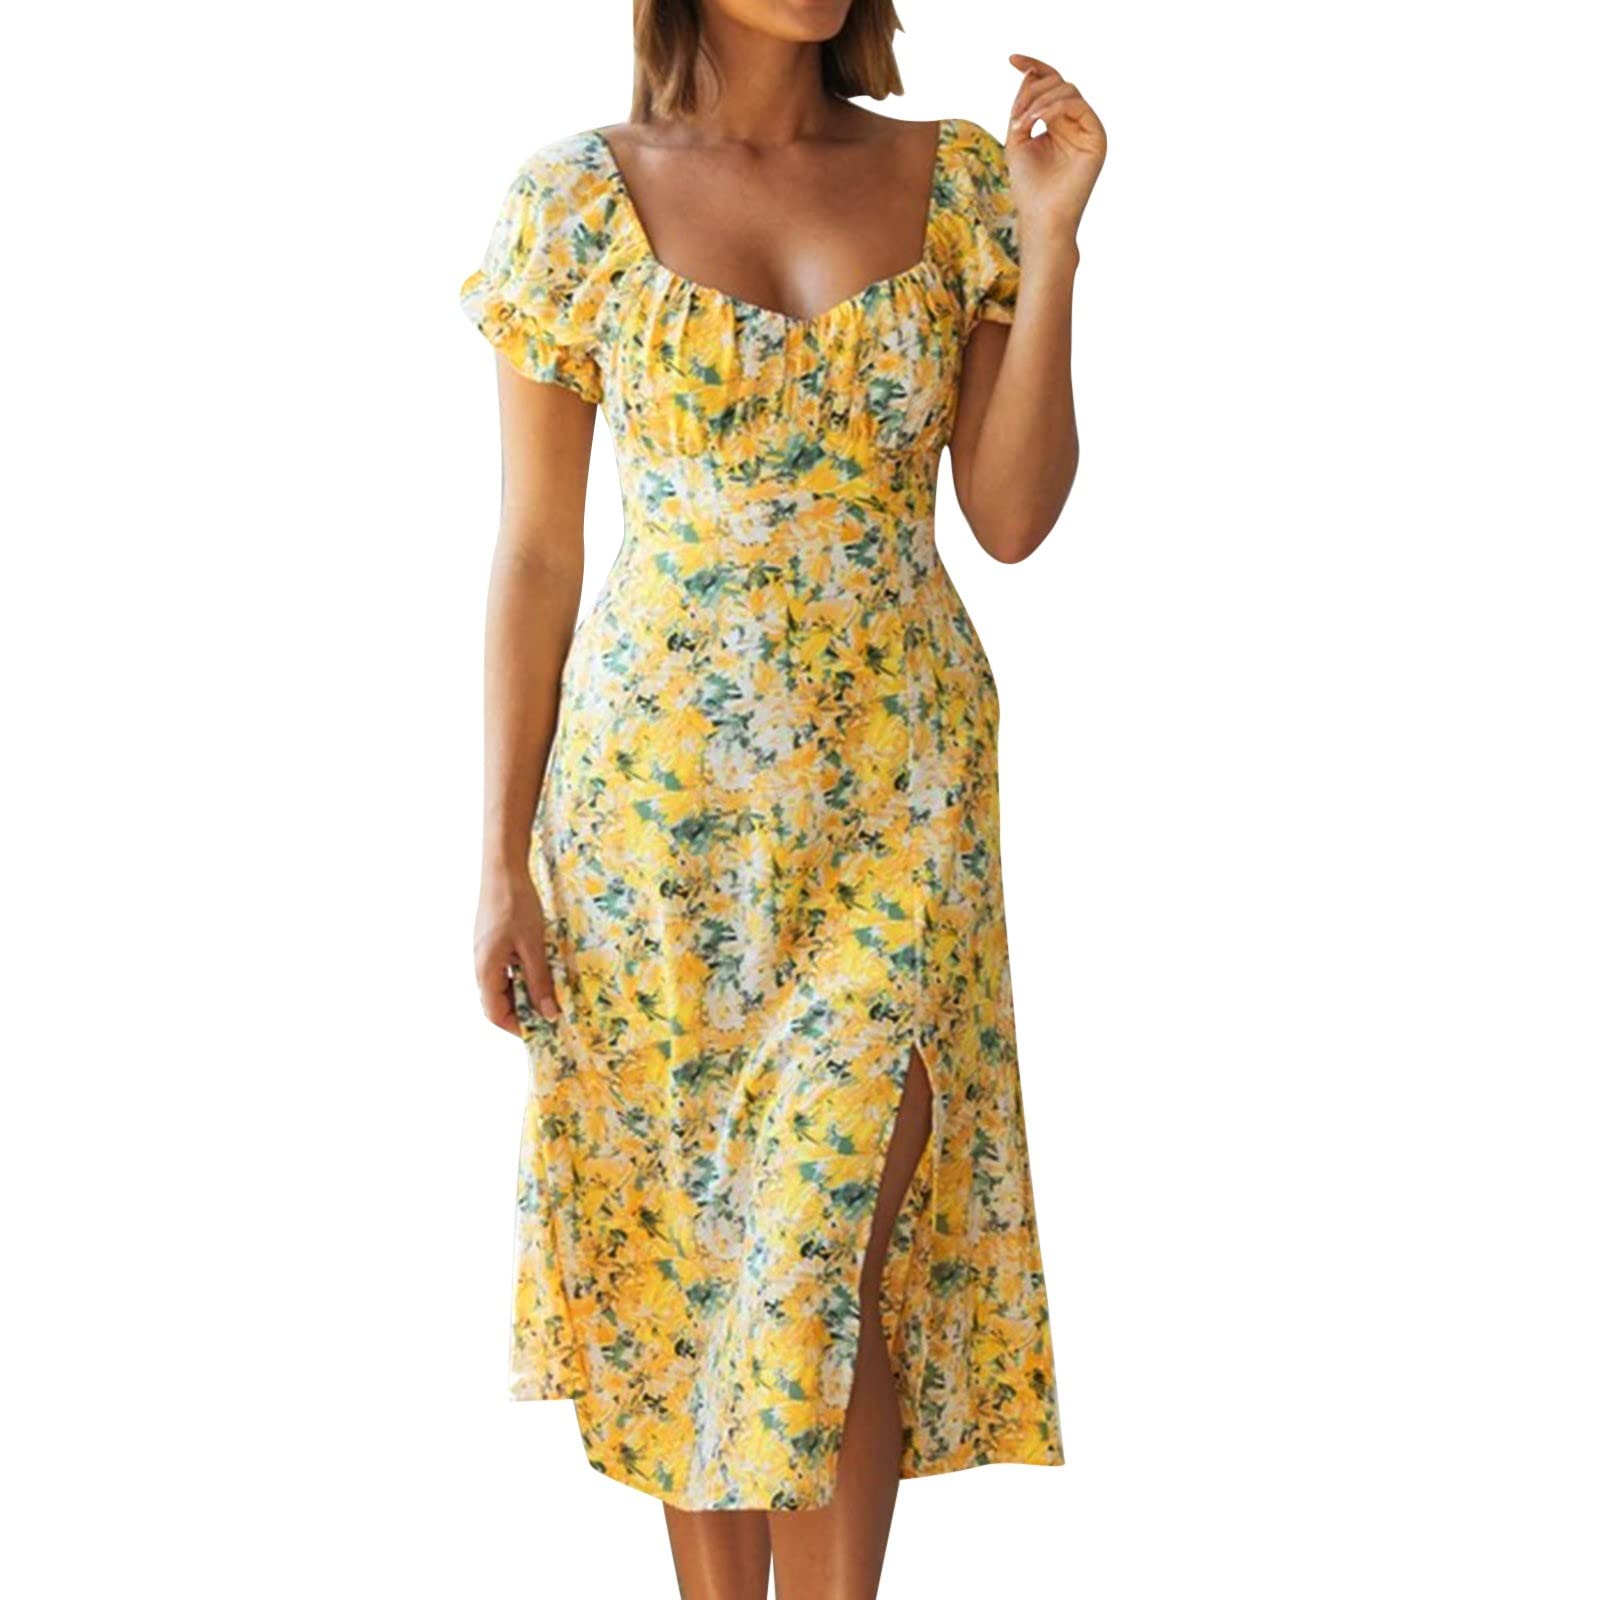 Colorful Sommerkleid Damen V-Ausschnitt Kurzarm Bandage Freizeitkleid, Kleider Gänseblümchen Mode Kurz Temperament Elegant Schwingen Kleid Blusenkleider Mini Dress (Yellow, M)